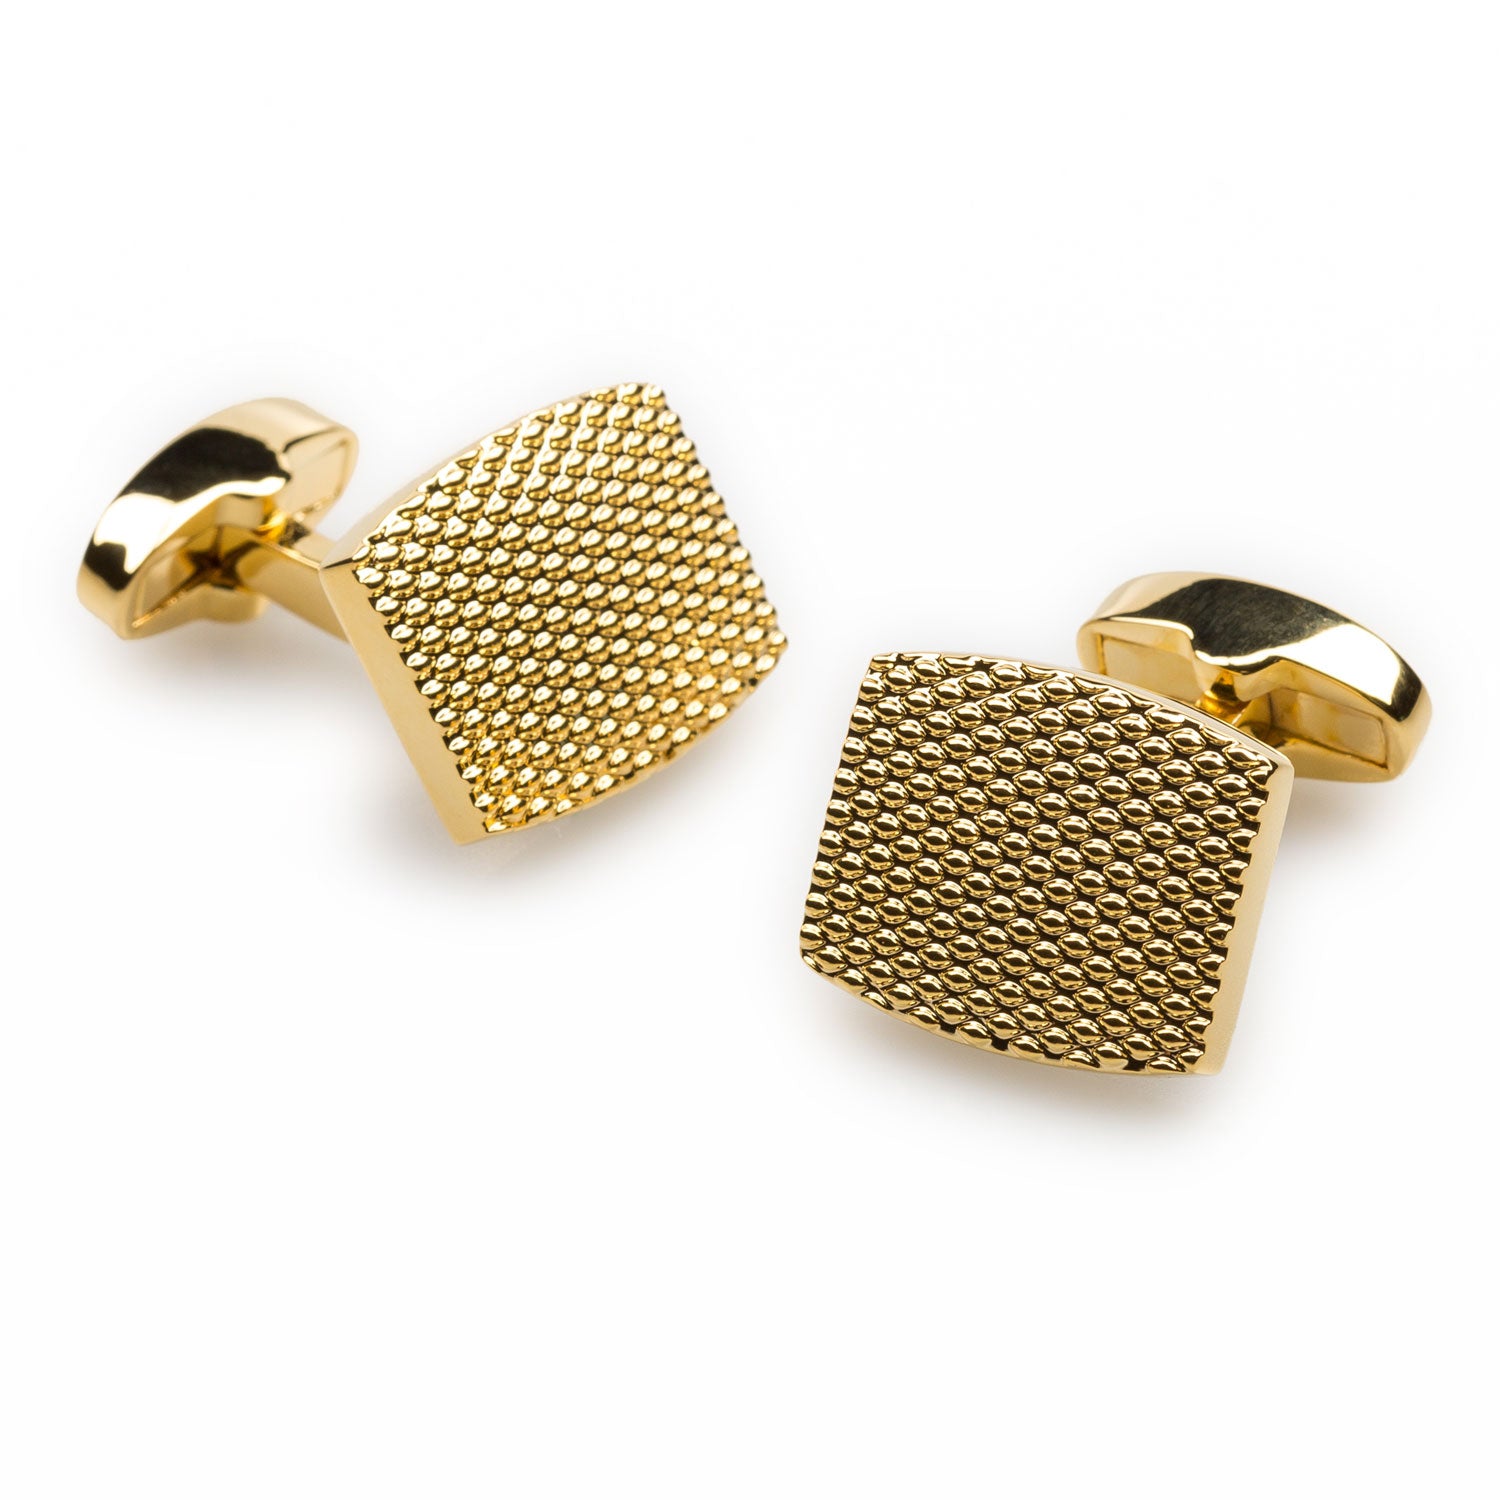 Honeycomb Gold Cufflinks